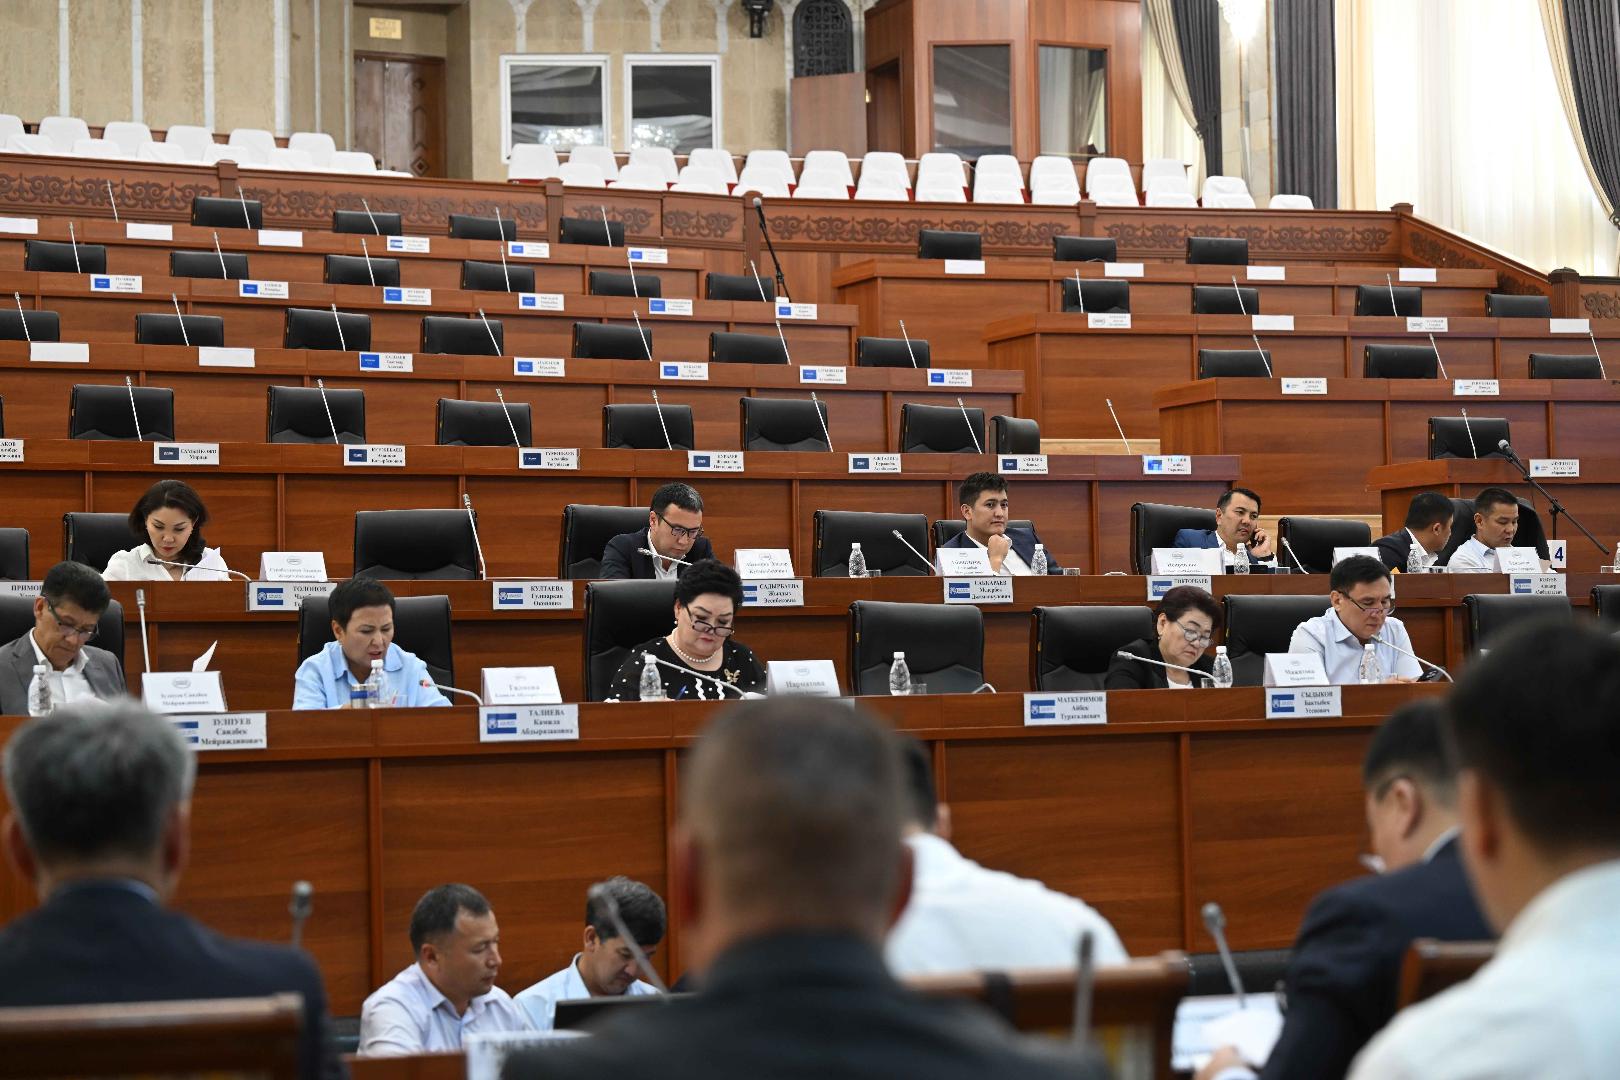 Комитет Жогорку Кенеша одобрил законопроект о введении утилизационного сбора